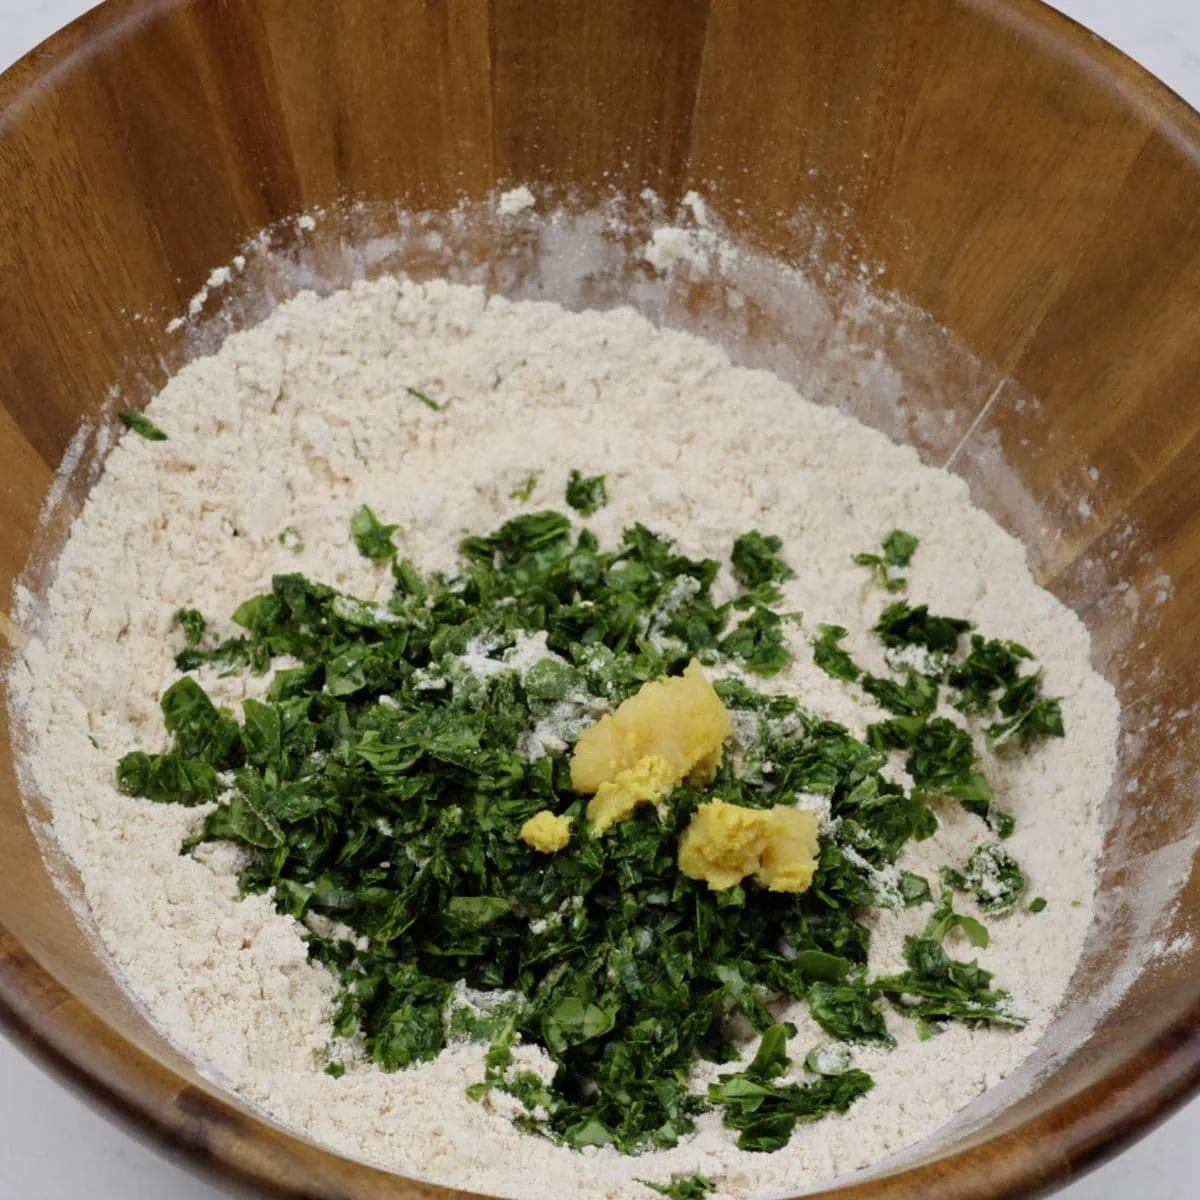 Ginger garlic paste to make methi thepla